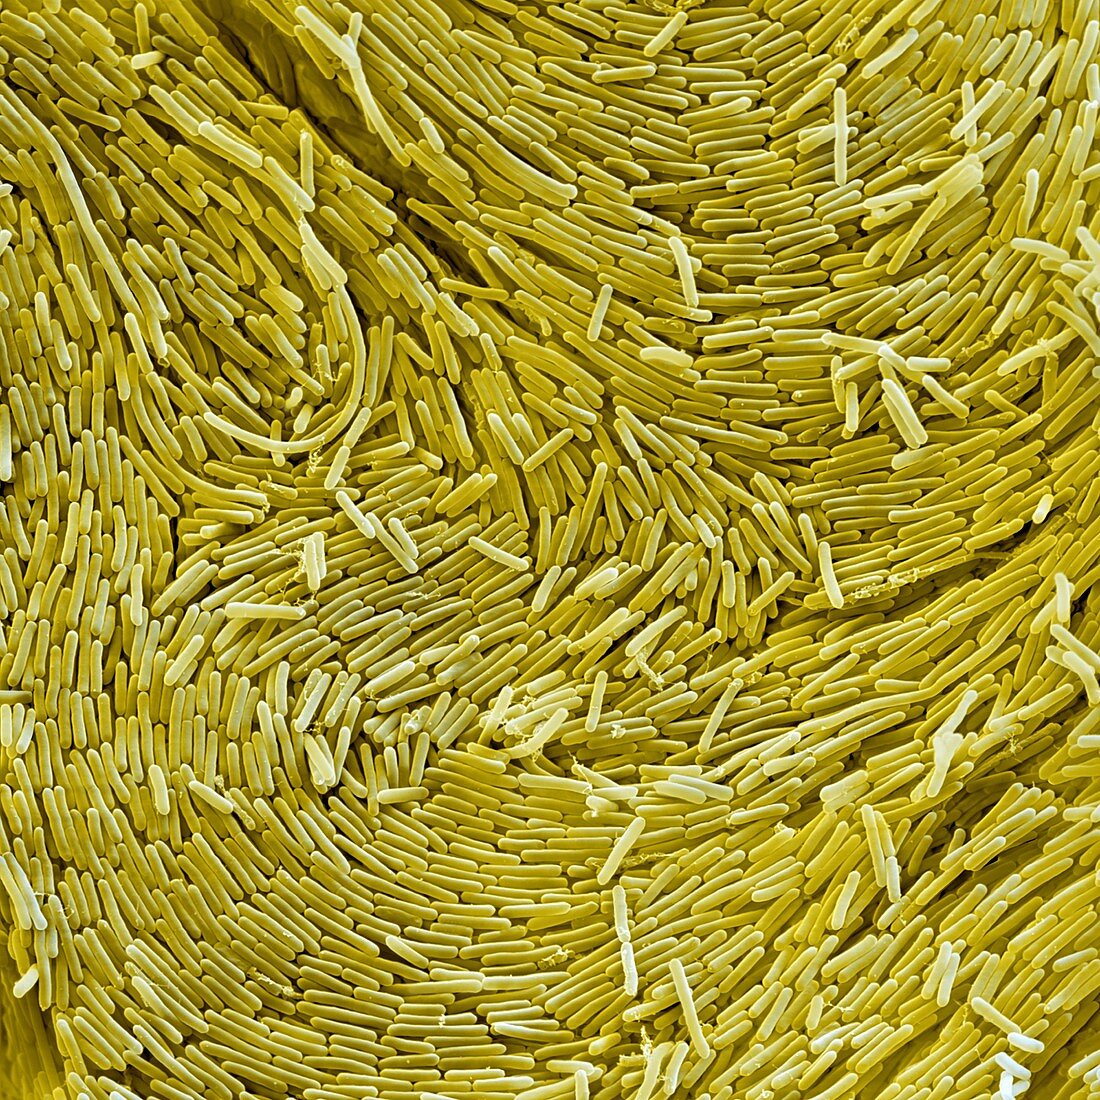 Bac spaericus 3000x - Bacillus sphaericus 3000x